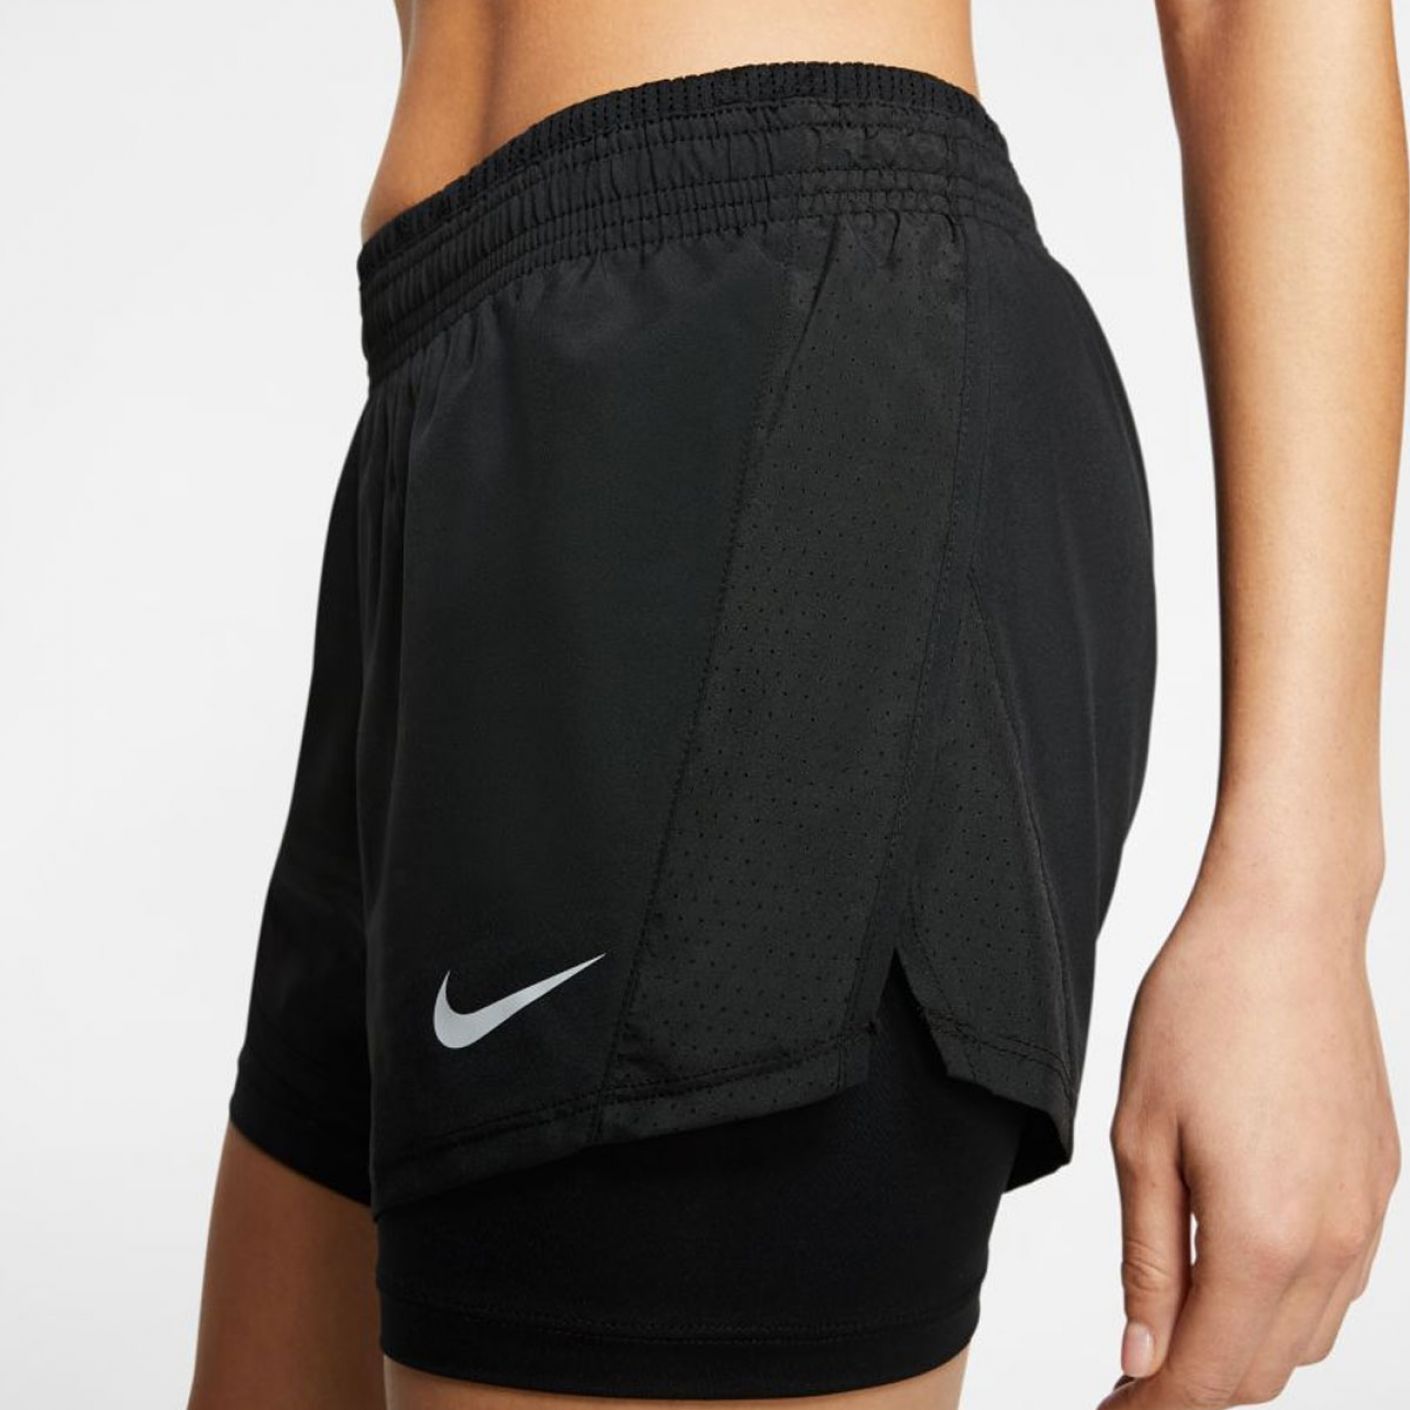 Nike Short Running Black for Women